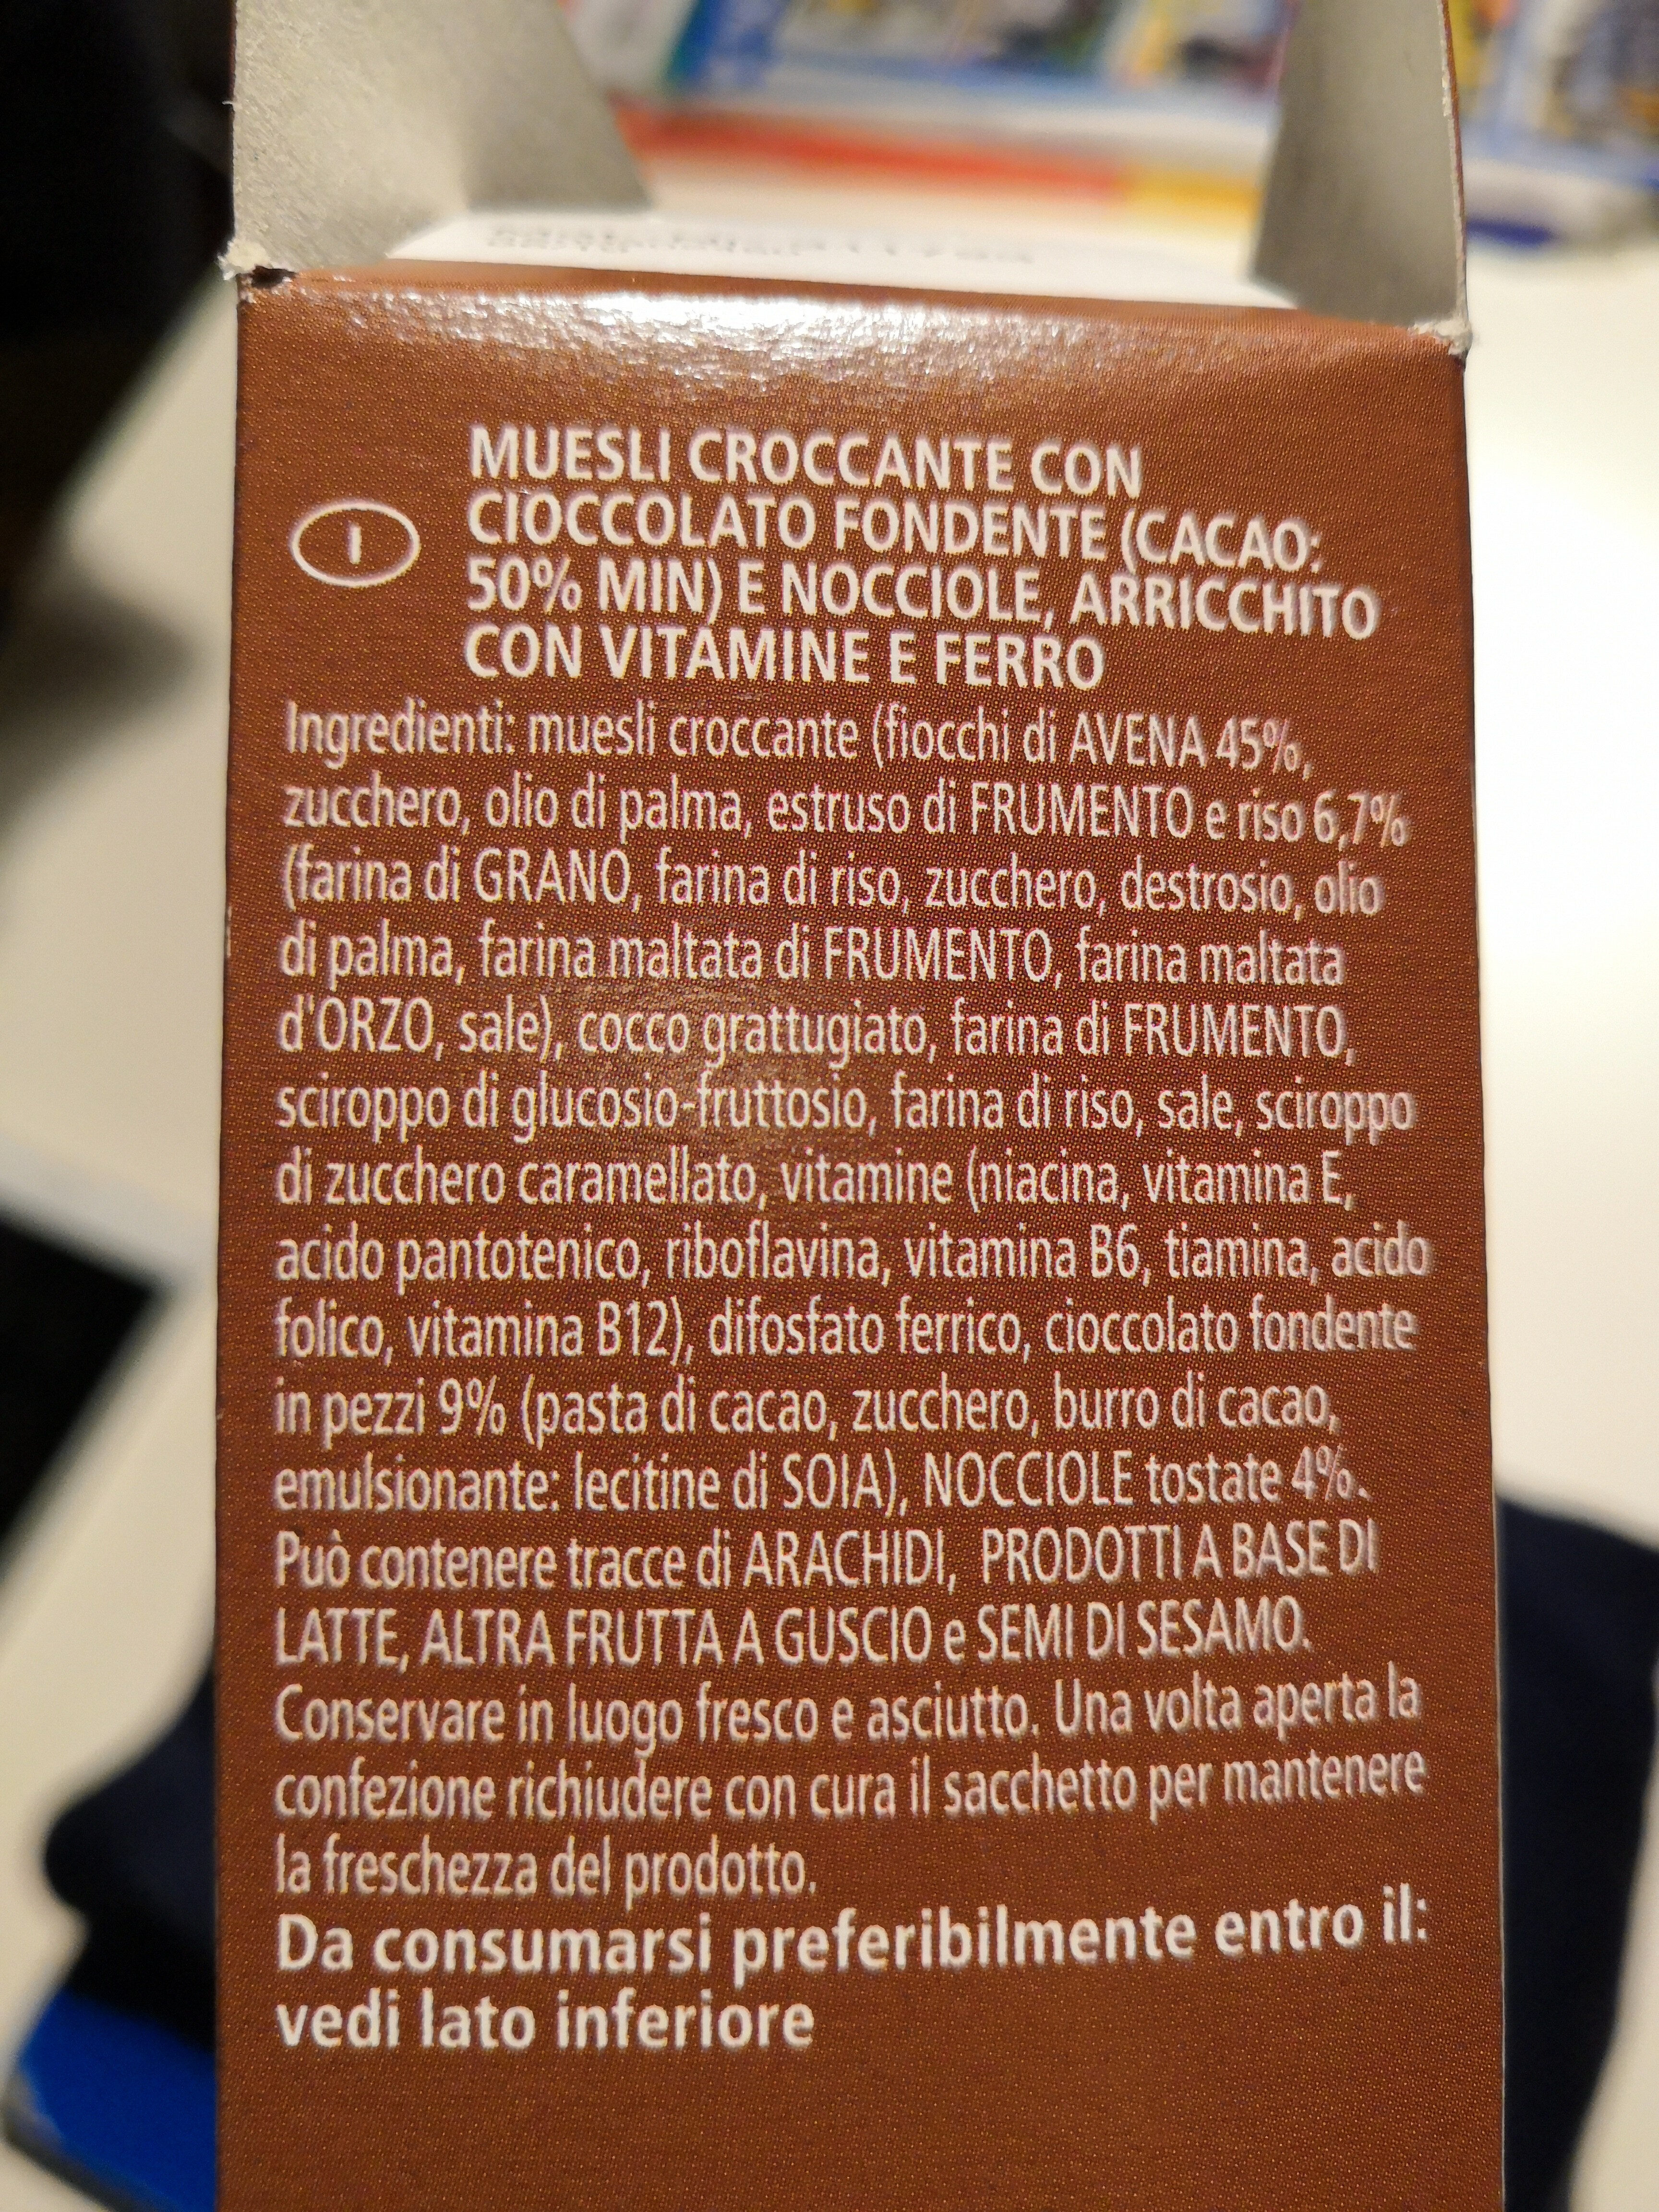 Muesli croccante al cioccolato e nocciole - Ingredients - it